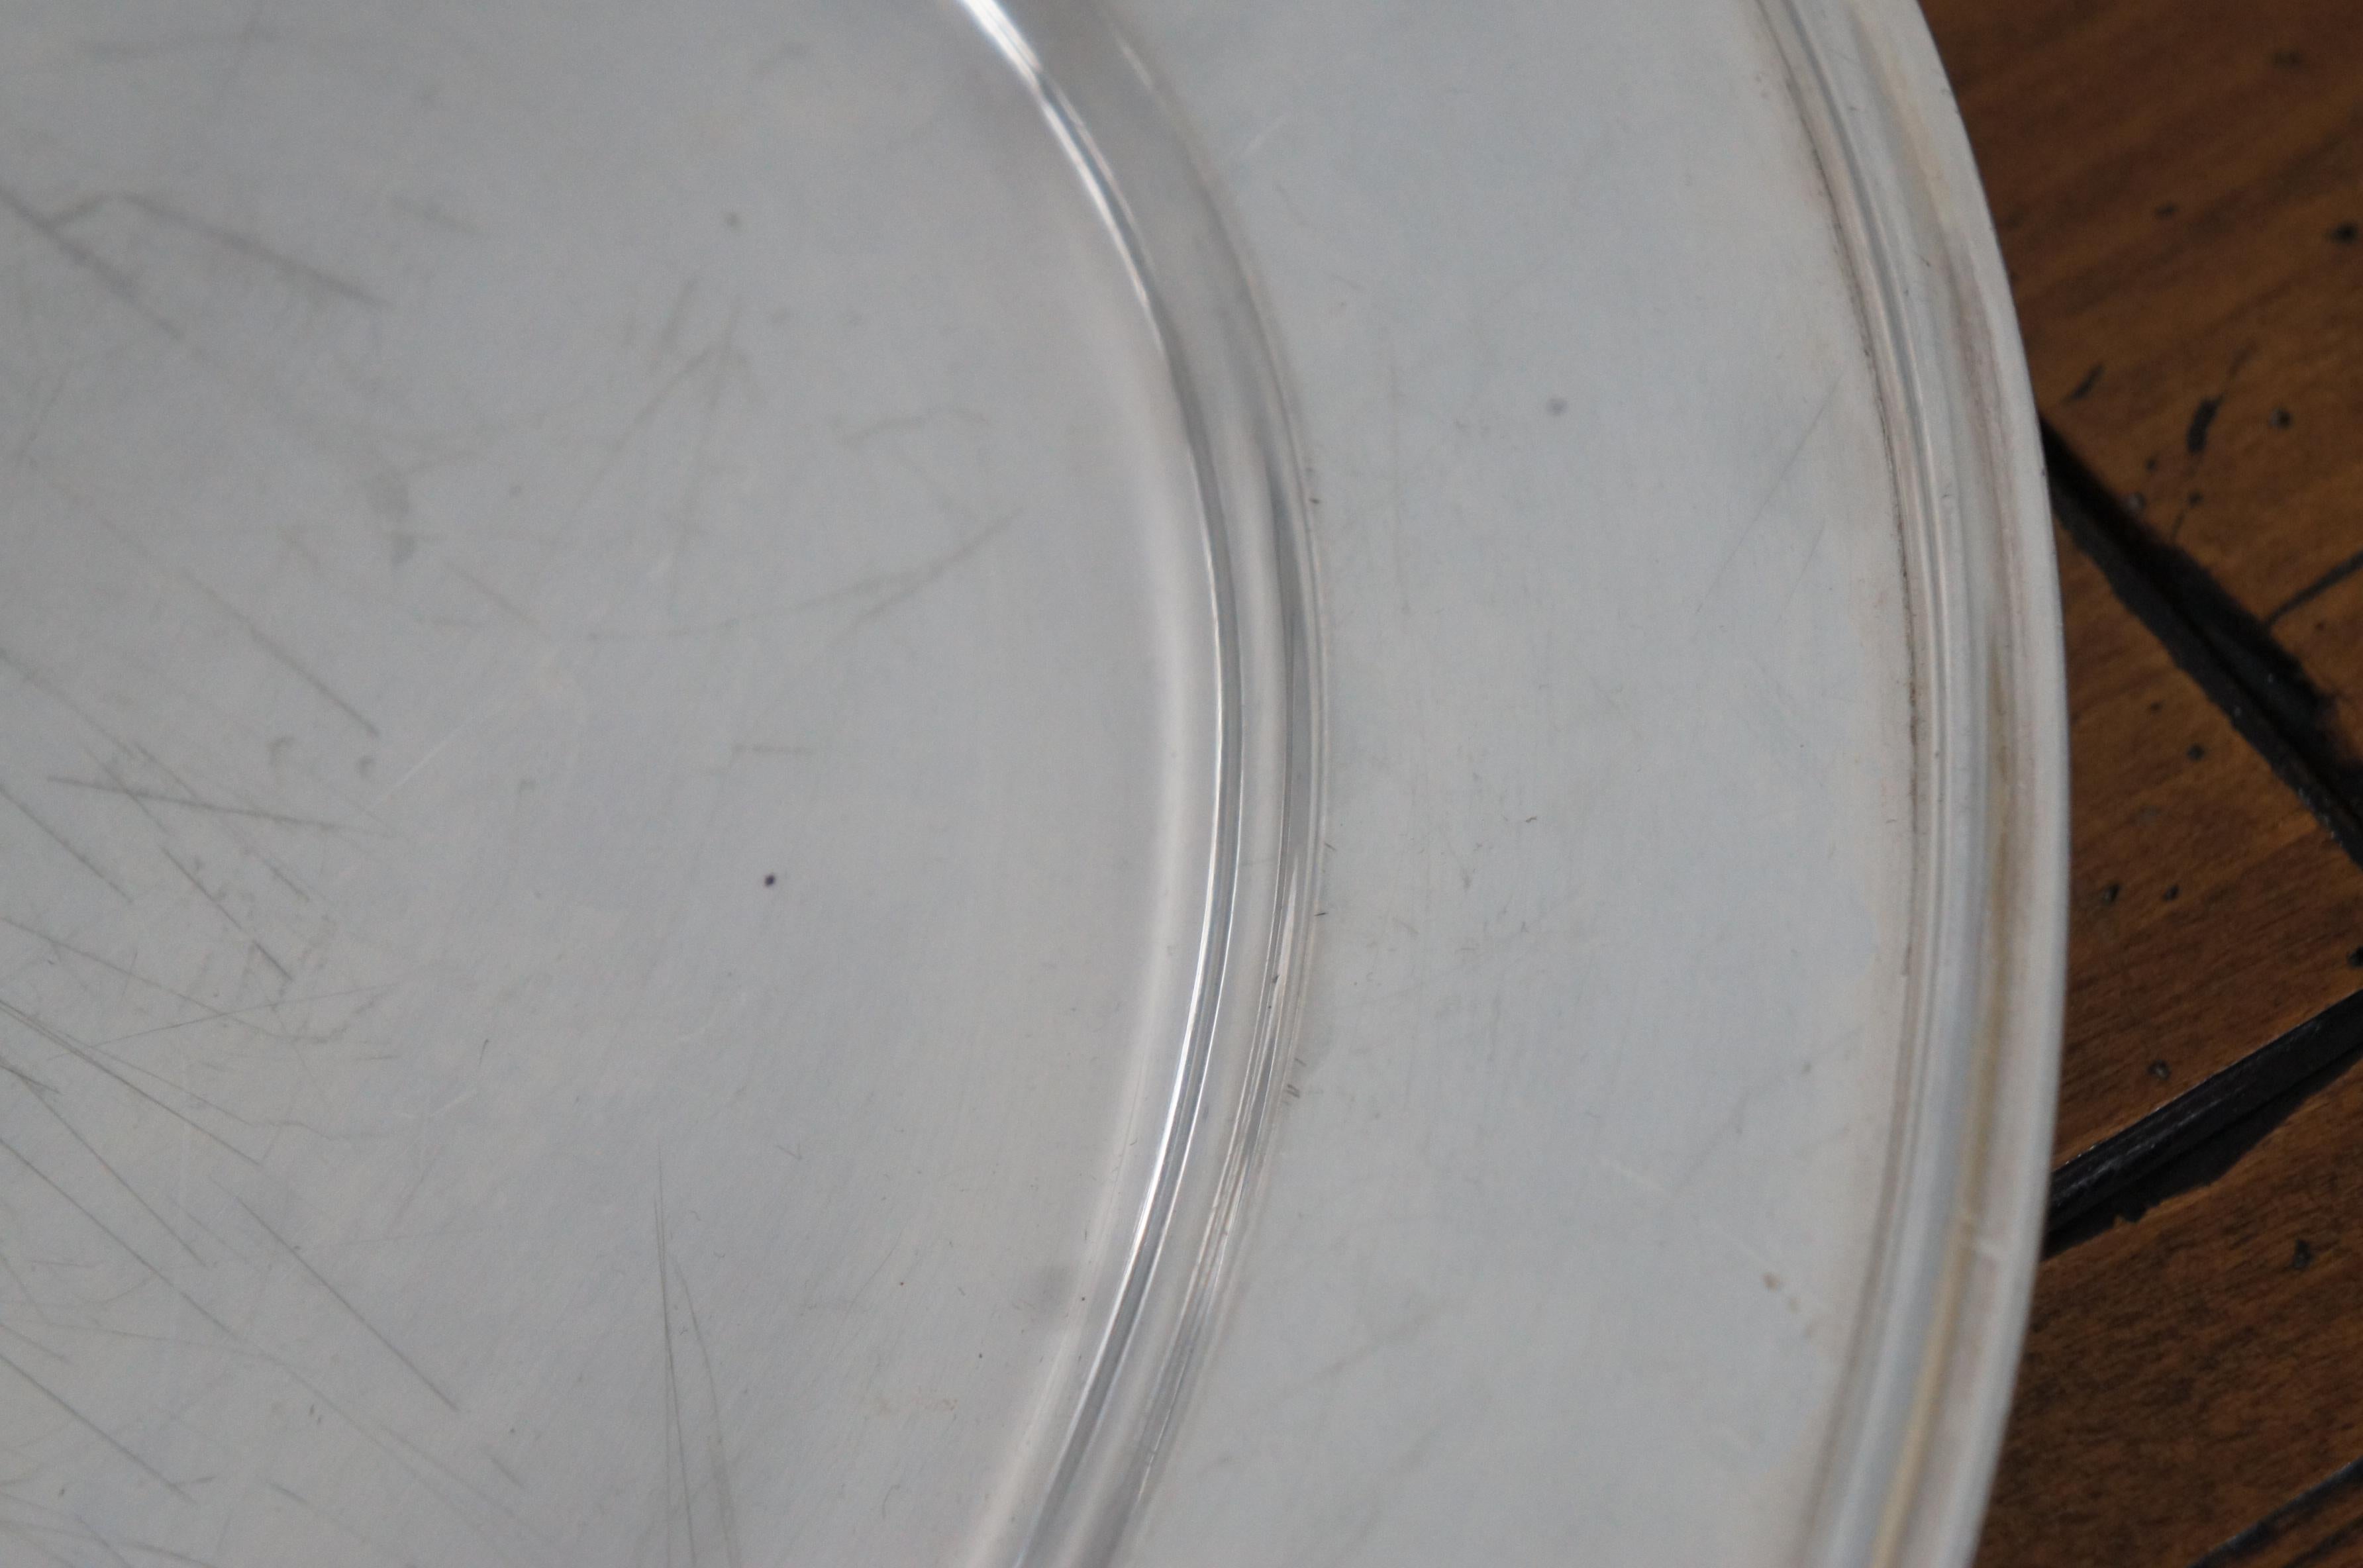 1934 Antike Reed & Barton Silber Platte Oval servieren Eitelkeit Platte Tablett 21